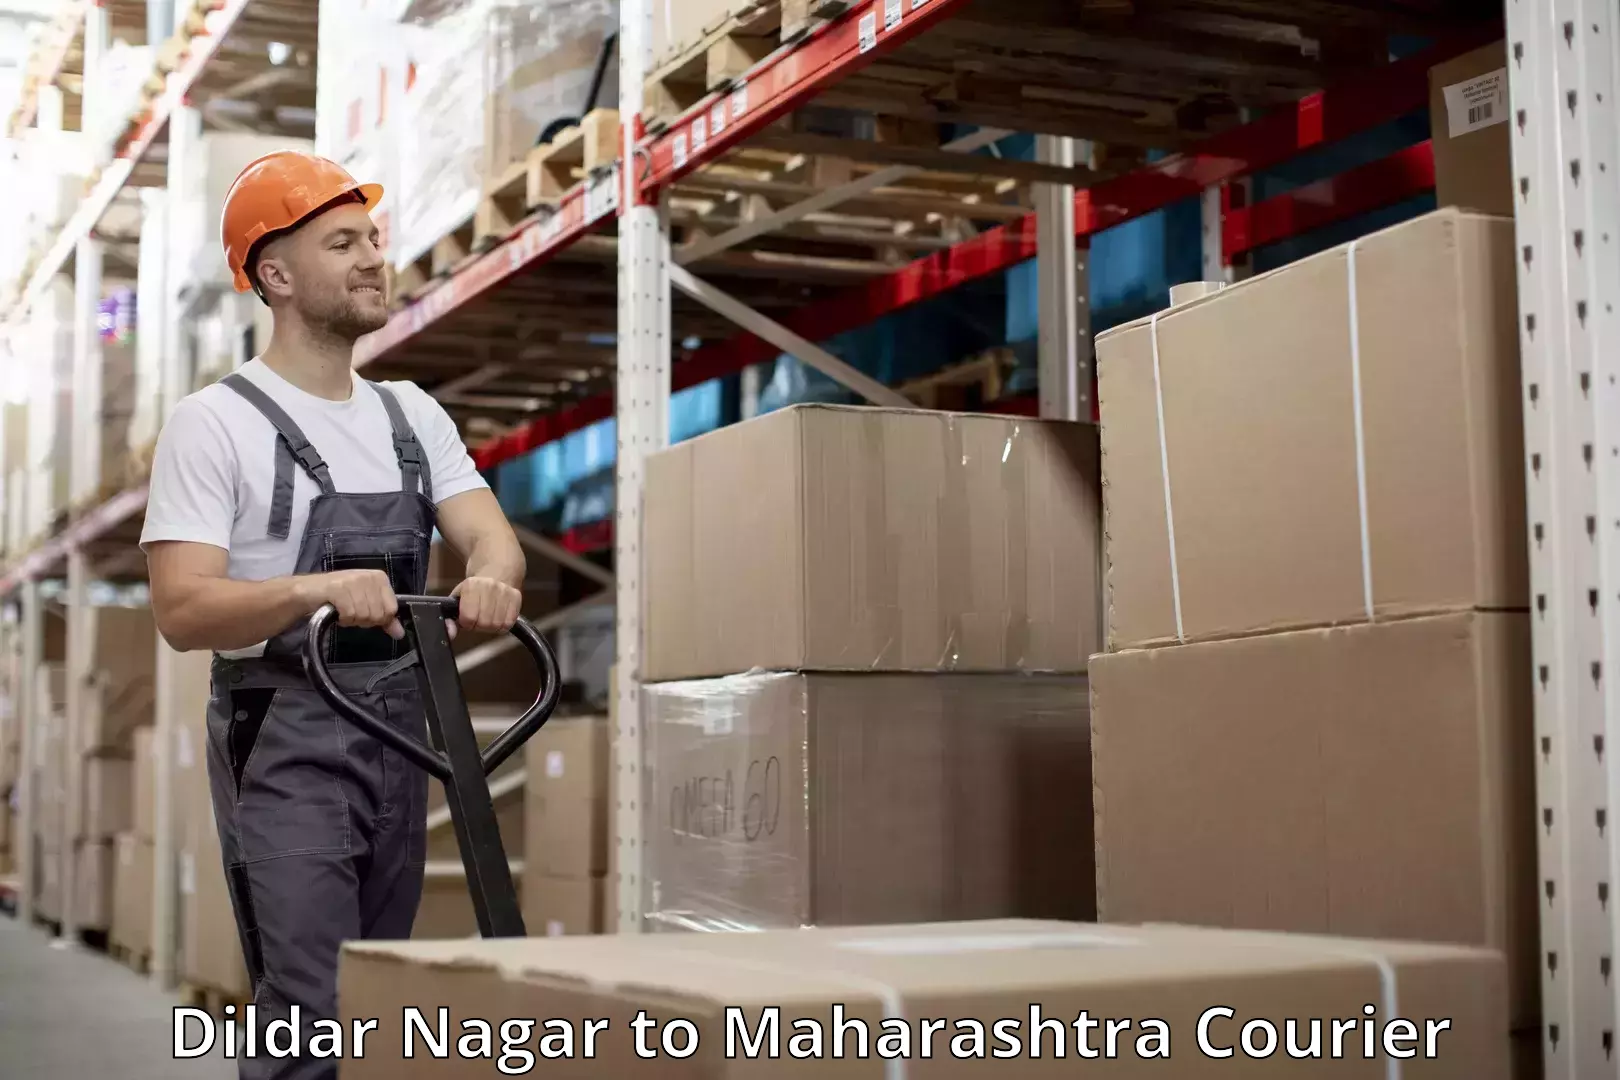 Baggage shipping service in Dildar Nagar to Maharashtra